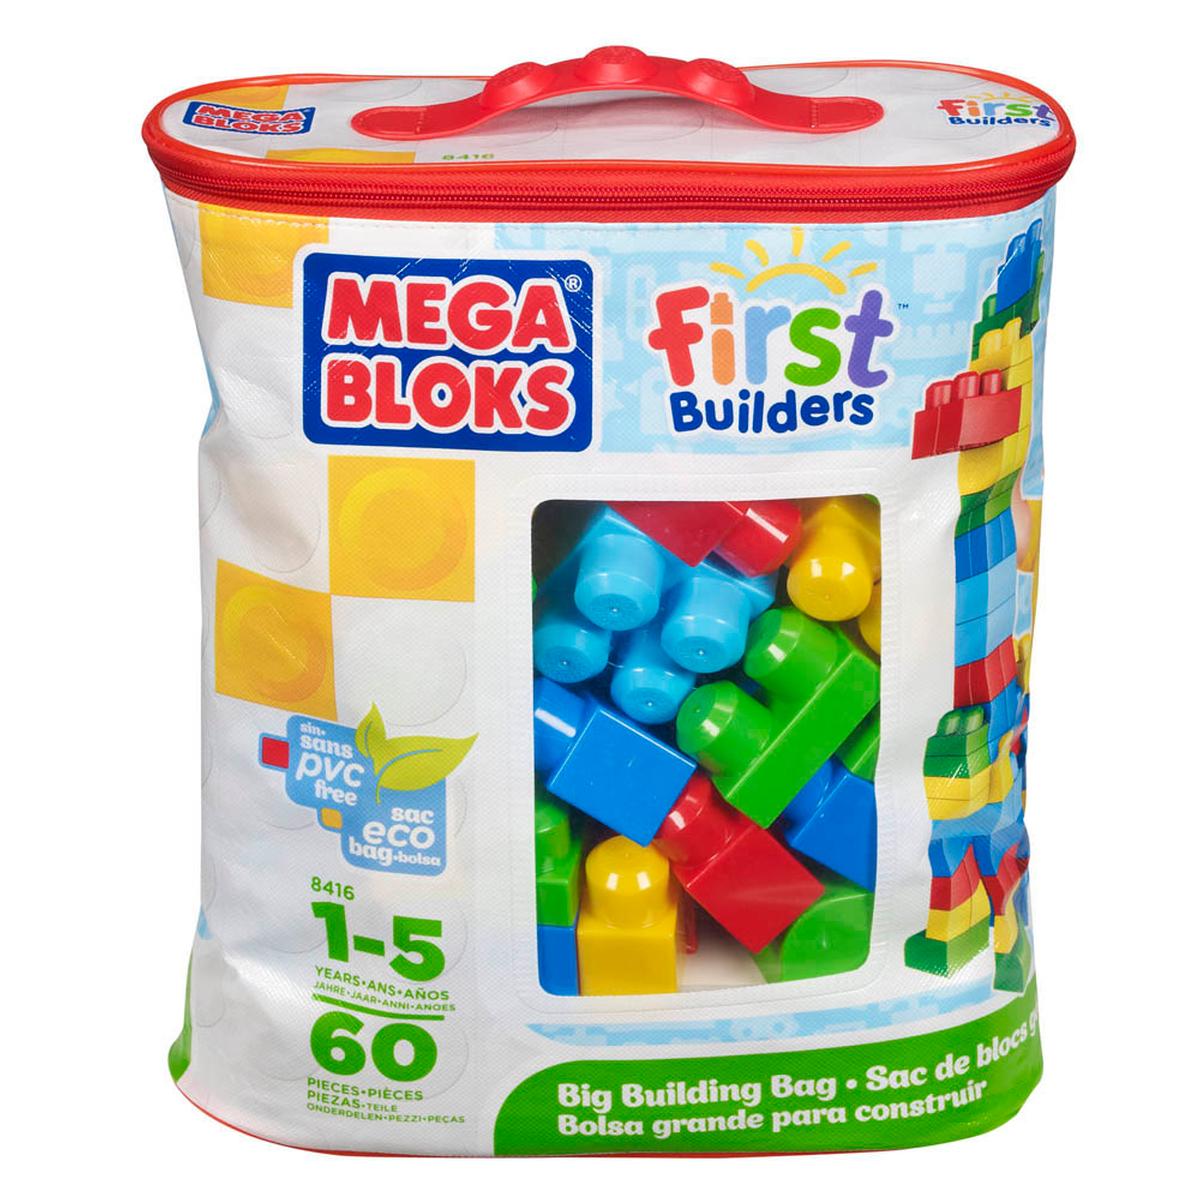 Nuevo Mega Bloks Primero Constructores gran construcción Bolsa Azul Juguete Regalo bloques 60 Piezas UK 